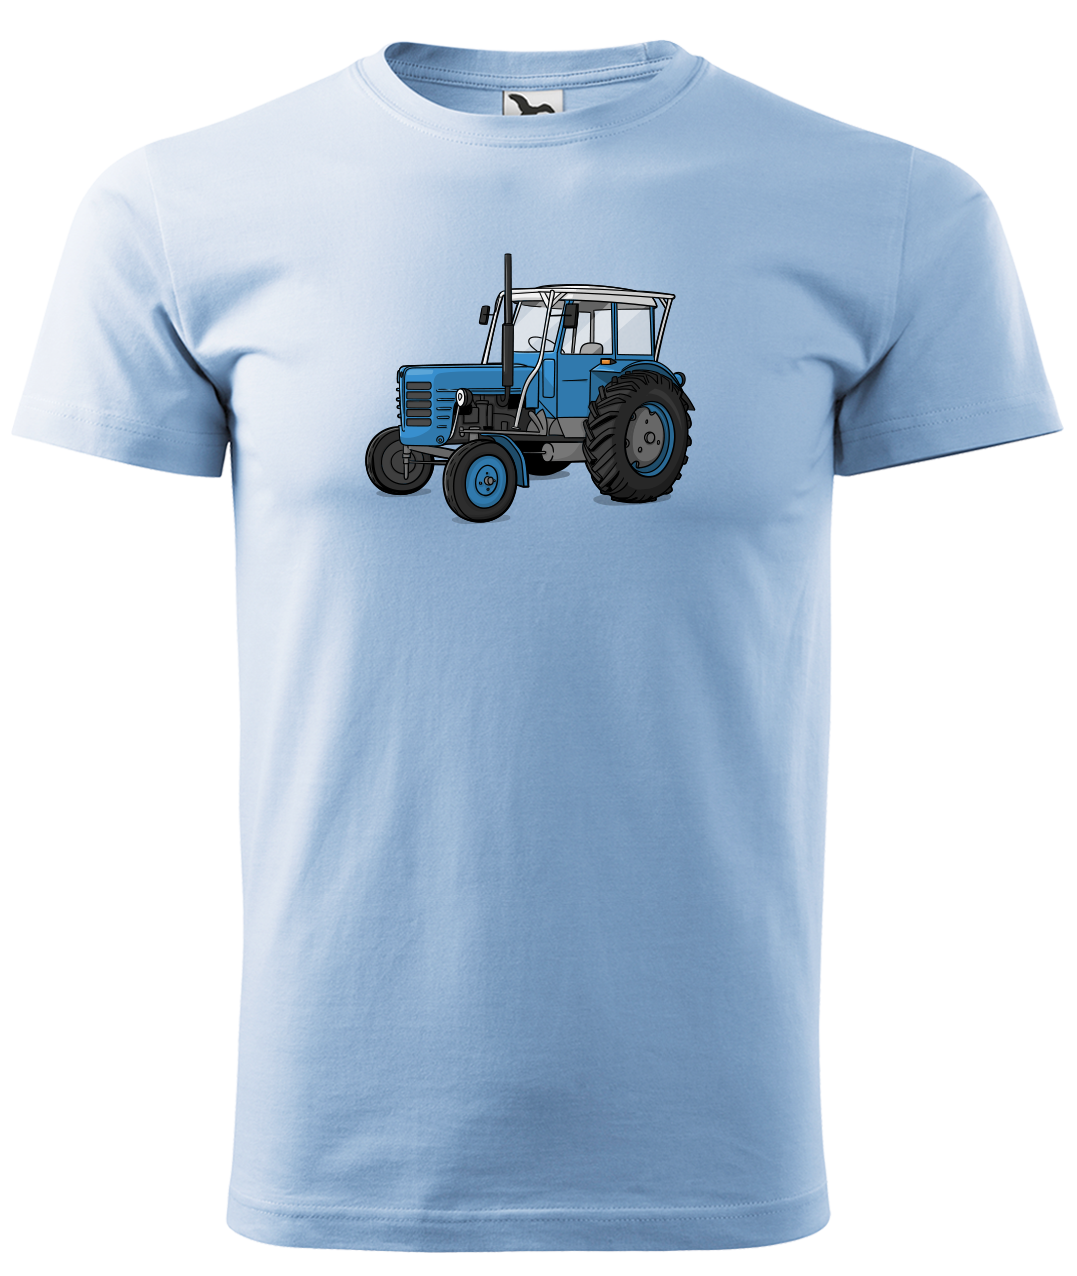 Dětské tričko s traktorem - Starý traktor Velikost: 10 let / 146 cm, Barva: Nebesky modrá (15)